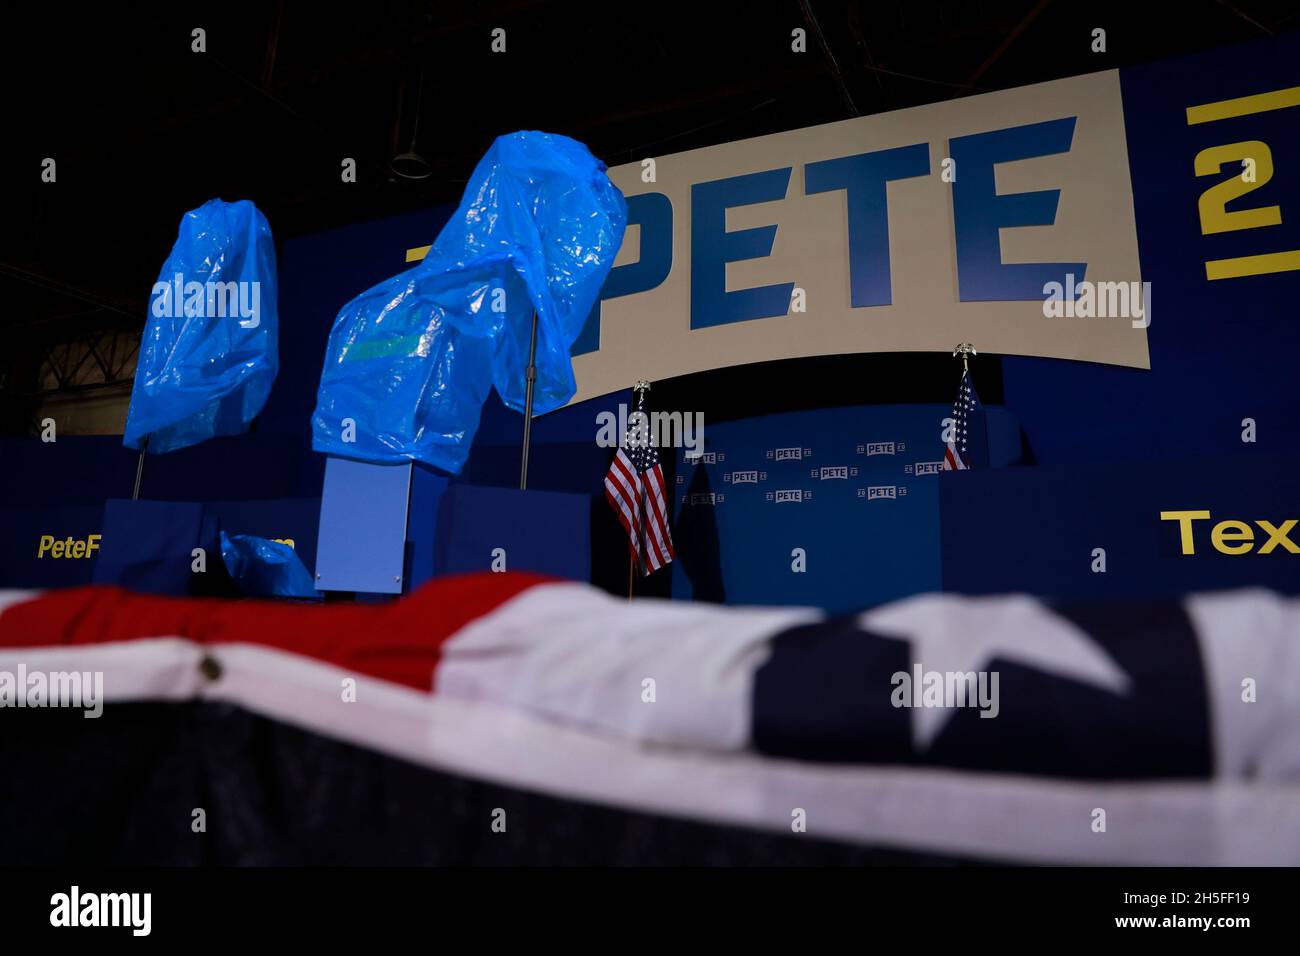 Taschen bedecken ein Podium, wenn Regenwasser von der Decke des Studebaker-Gebäudes 84 fällt. South Bend, Indiana Bürgermeister Pete Buttigieg kündigt an, dass er für den Präsidenten der Vereinigten Staaten in der Wahl 2020 während einer Wahlkampfveranstaltung am Sonntag kandidiert. Stockfoto